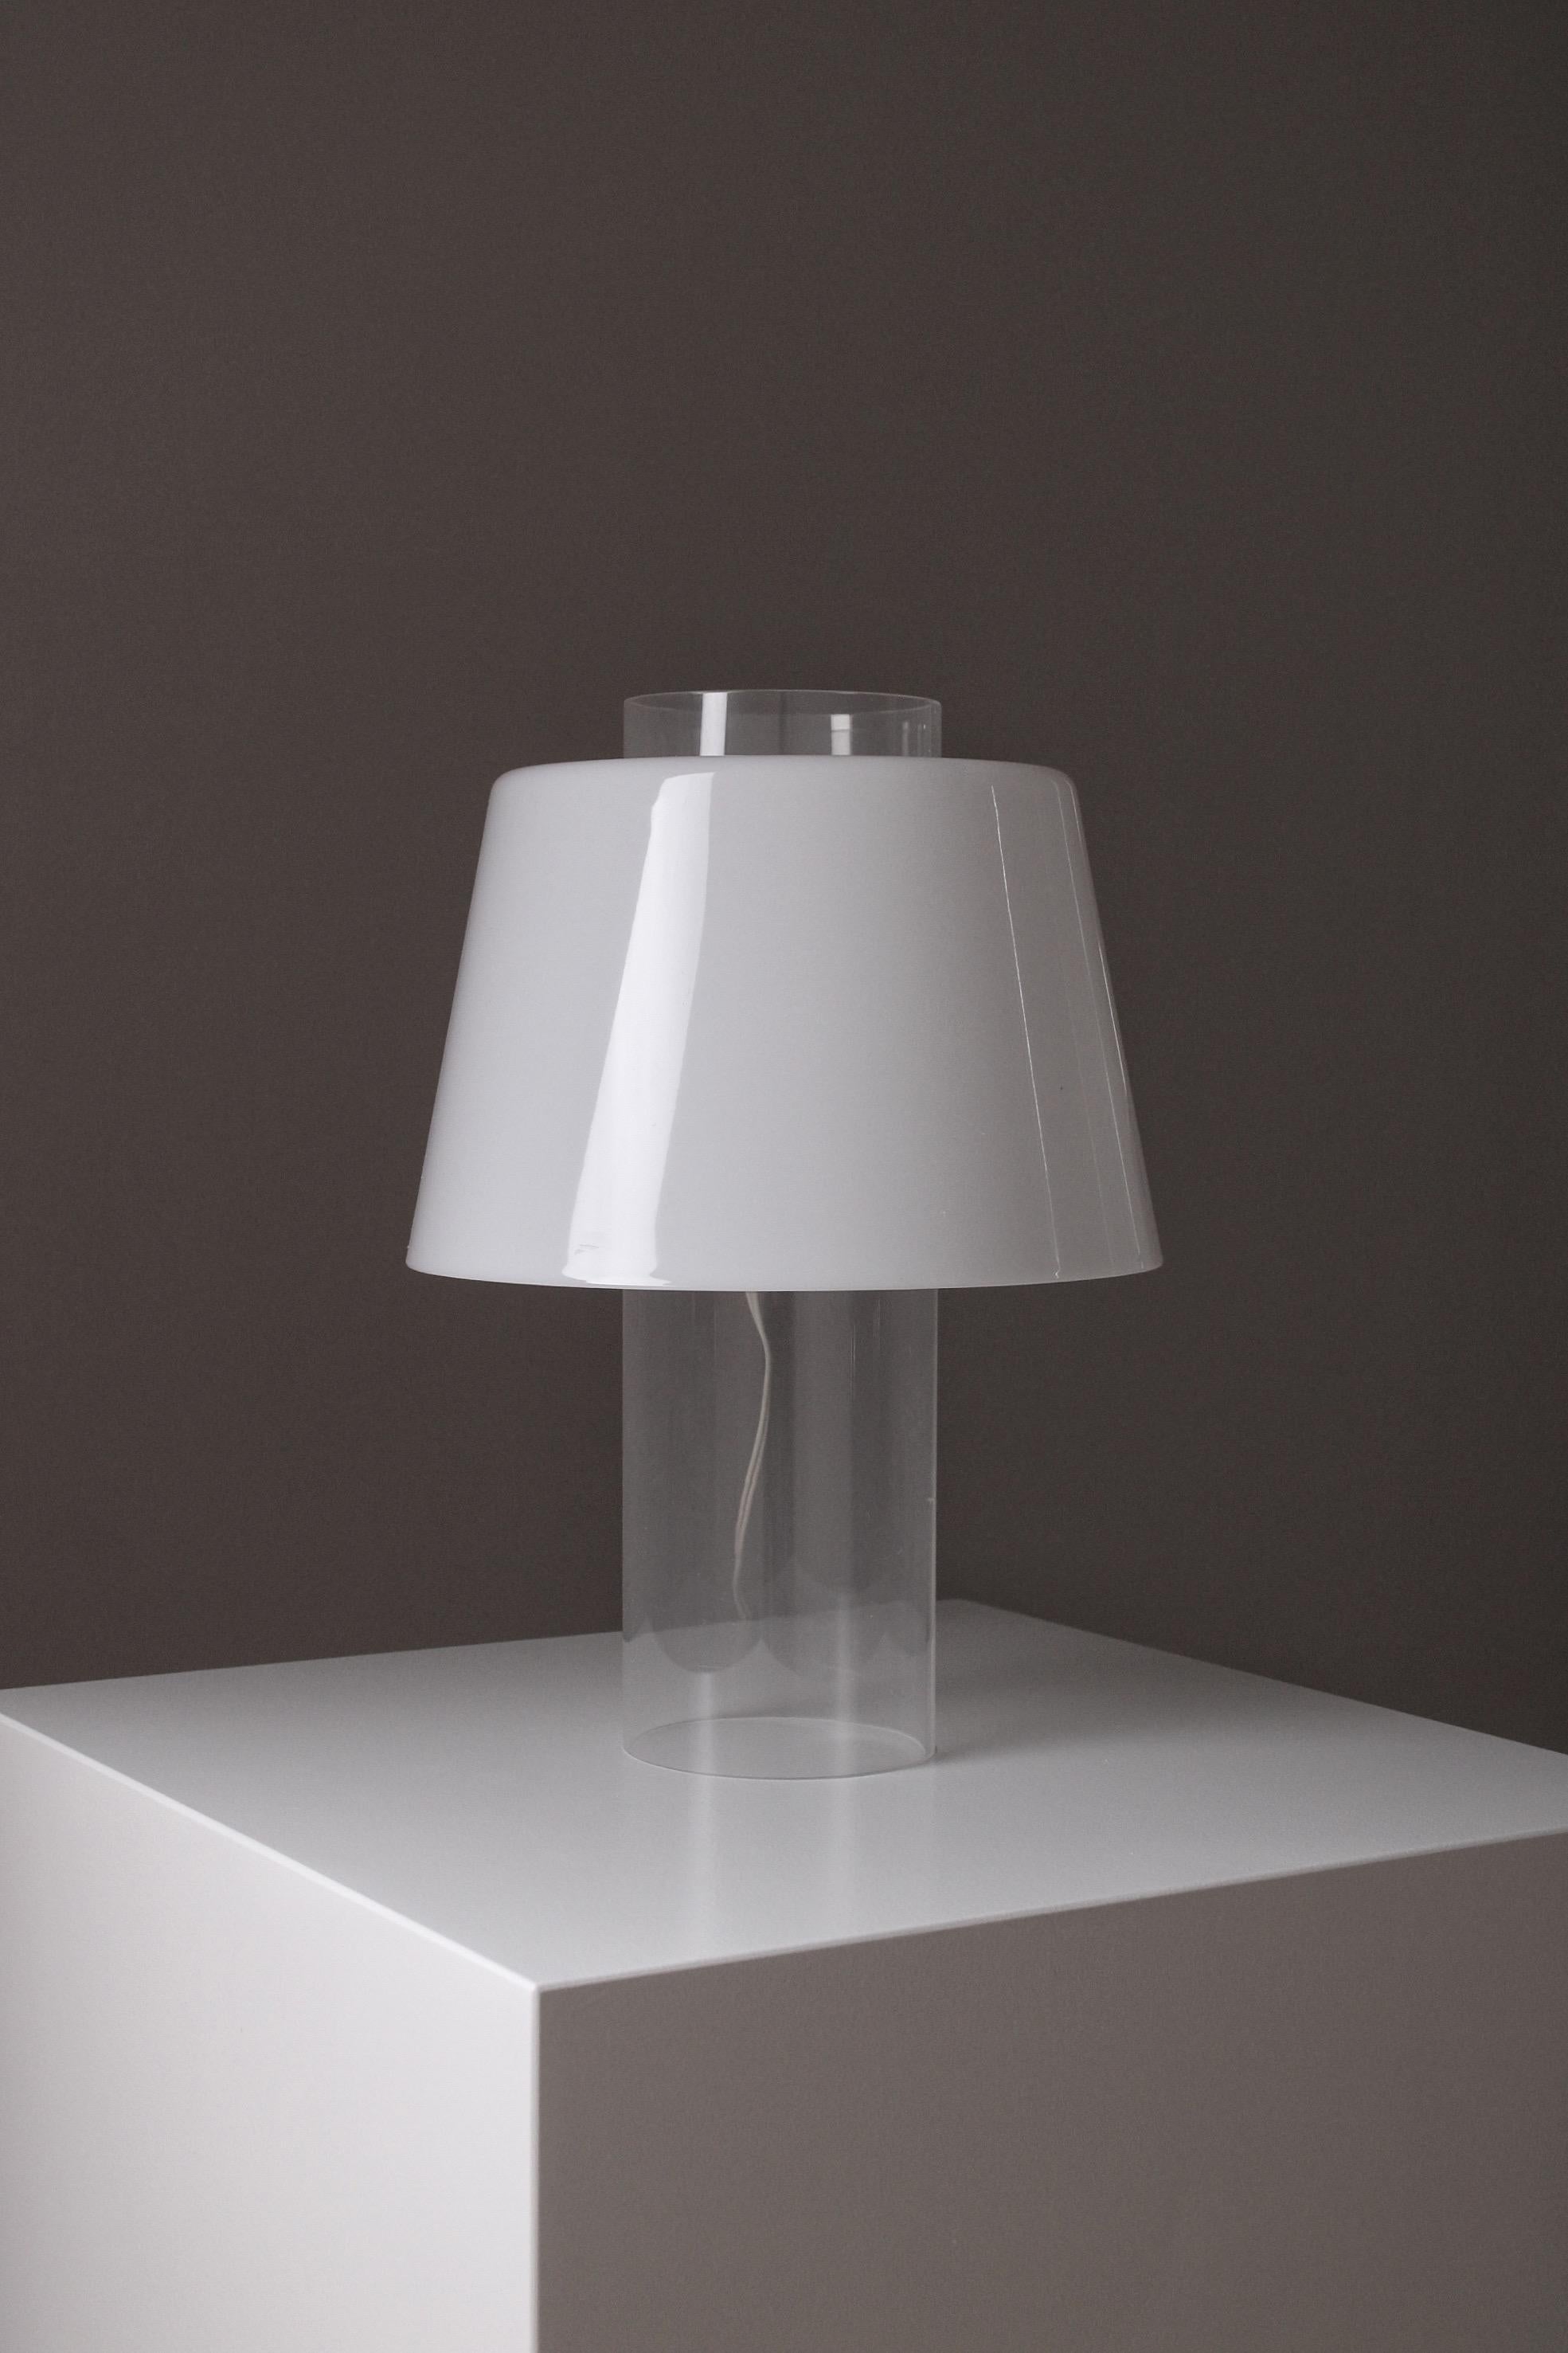 Lampe de table du début de l'art moderne, conçue par Yki Nummi en 1955. Produit par Stockmann-Orno en Finlande. Stockmann-Orno a été l'un des premiers fabricants à expérimenter le méthacrylate. Ce modèle est, entre autres, l'une des premières lampes